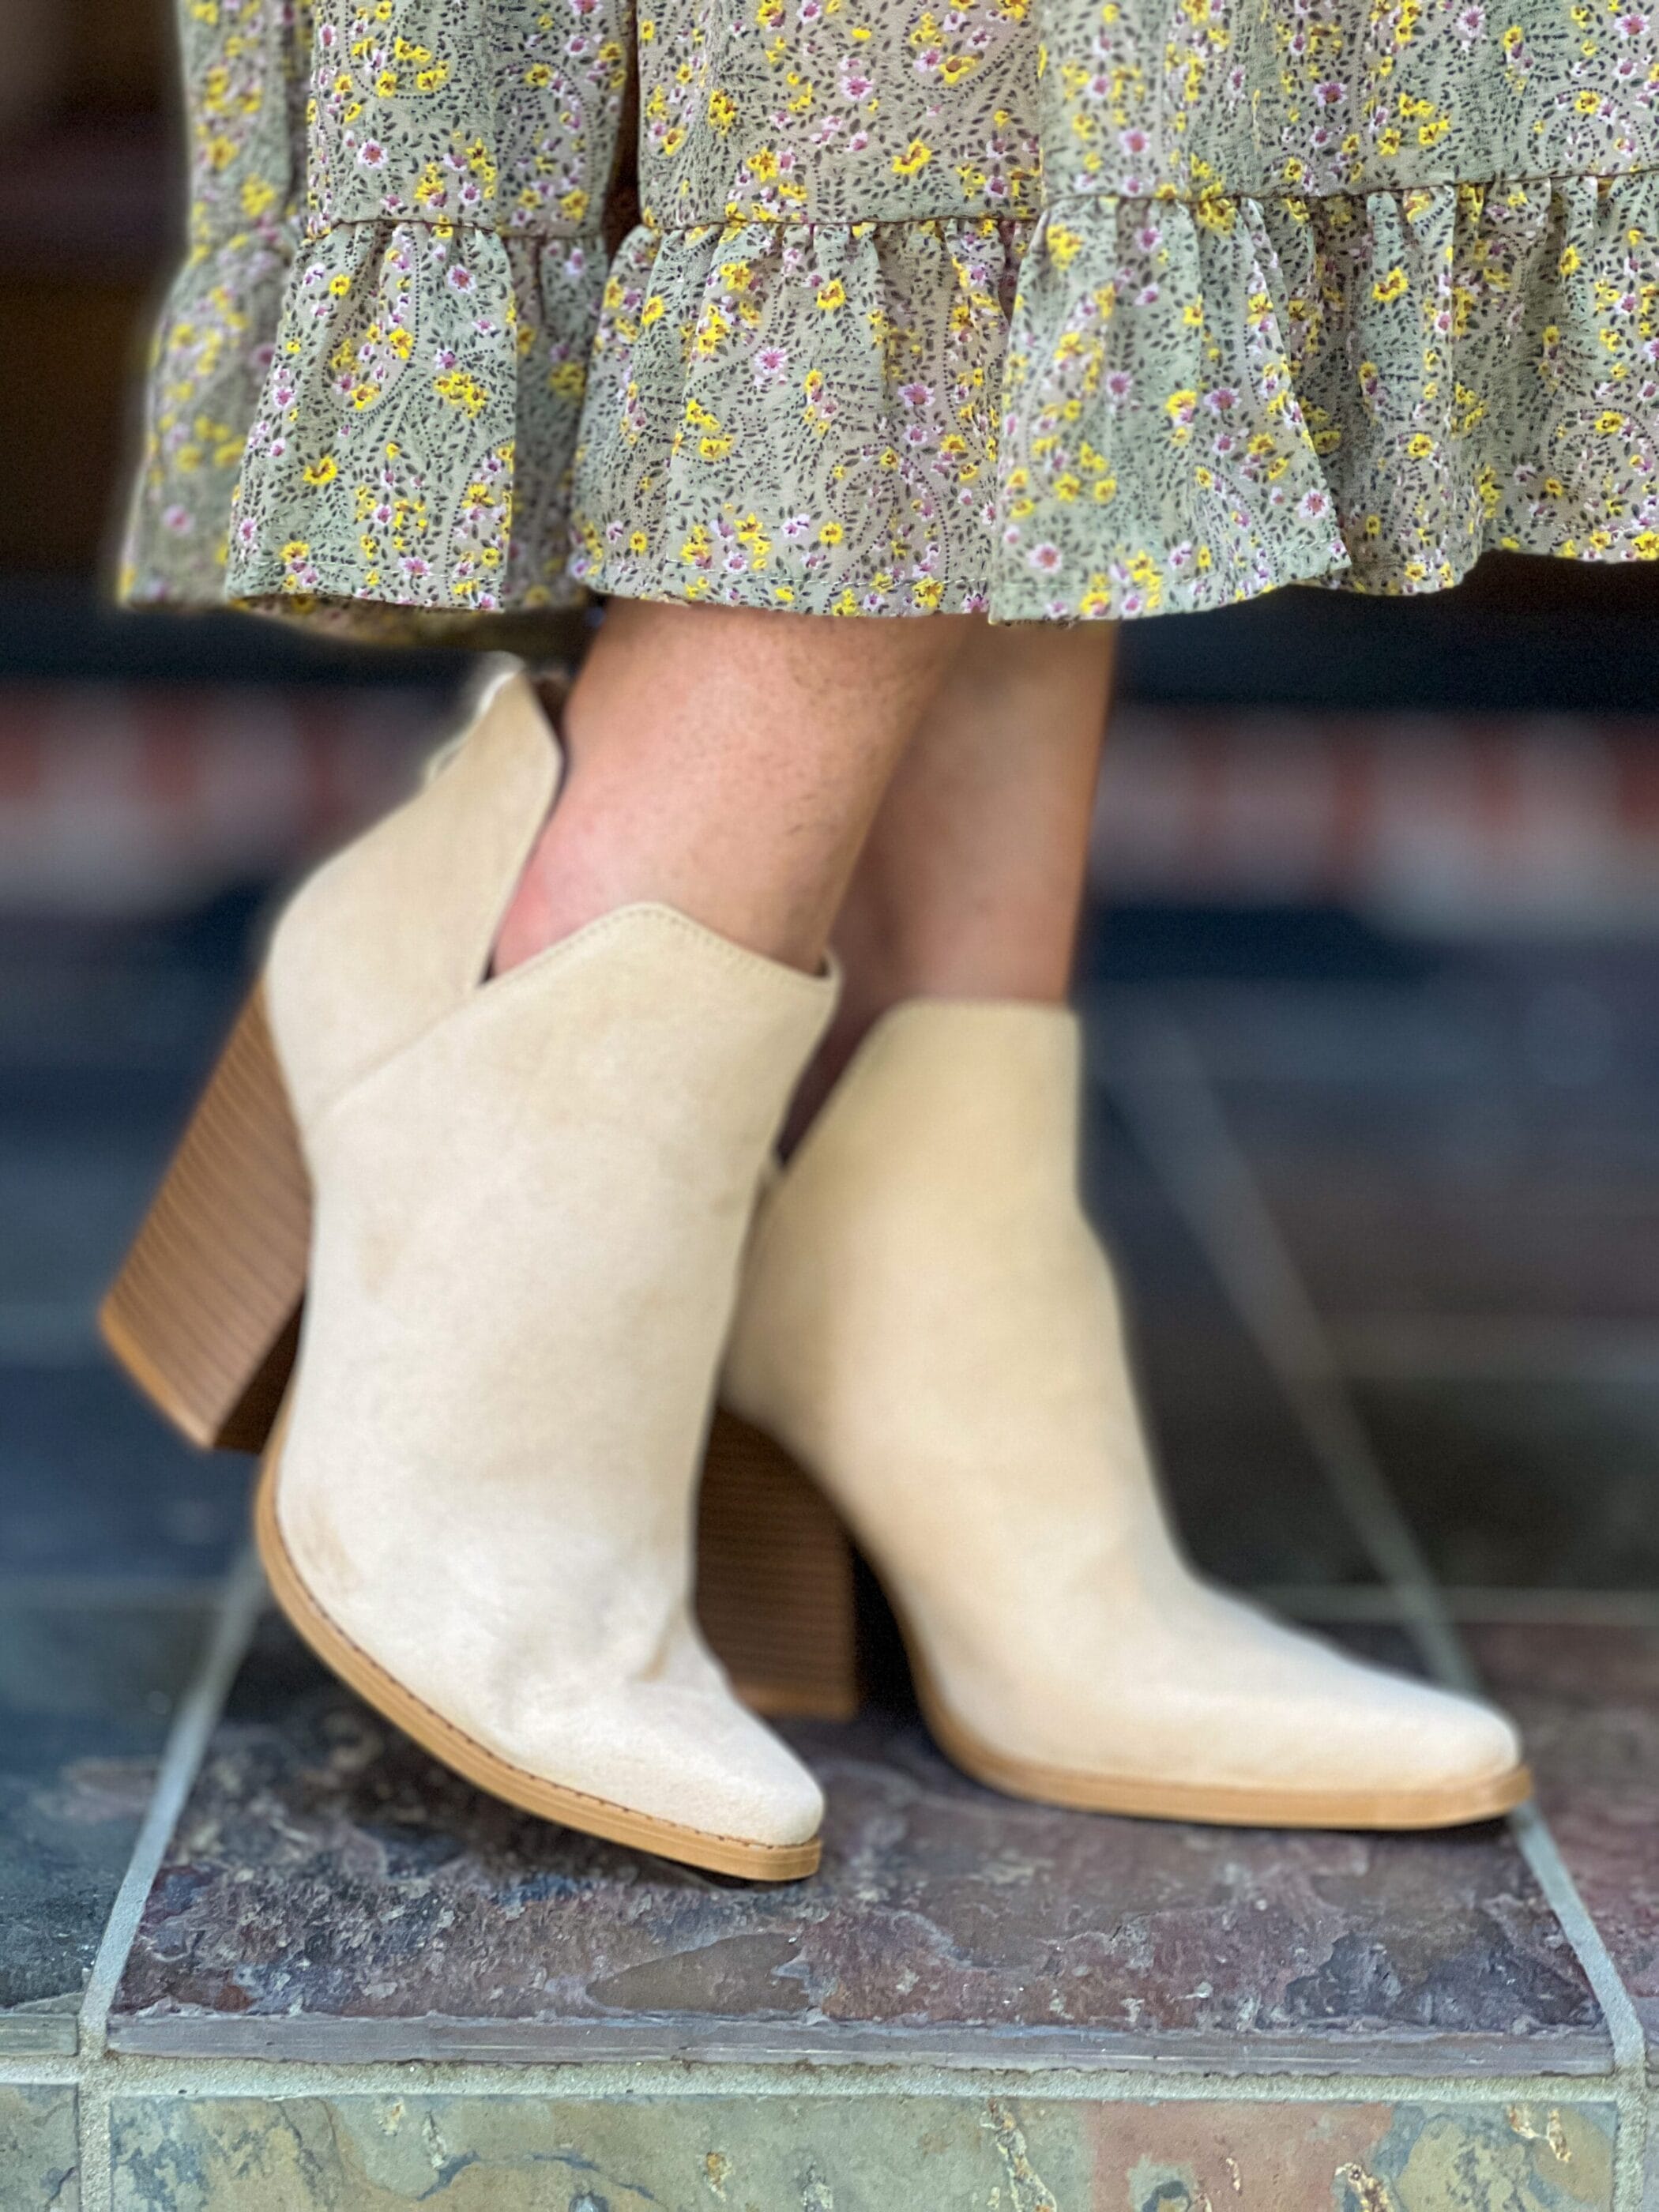 woman's feet wearing faux suede booties